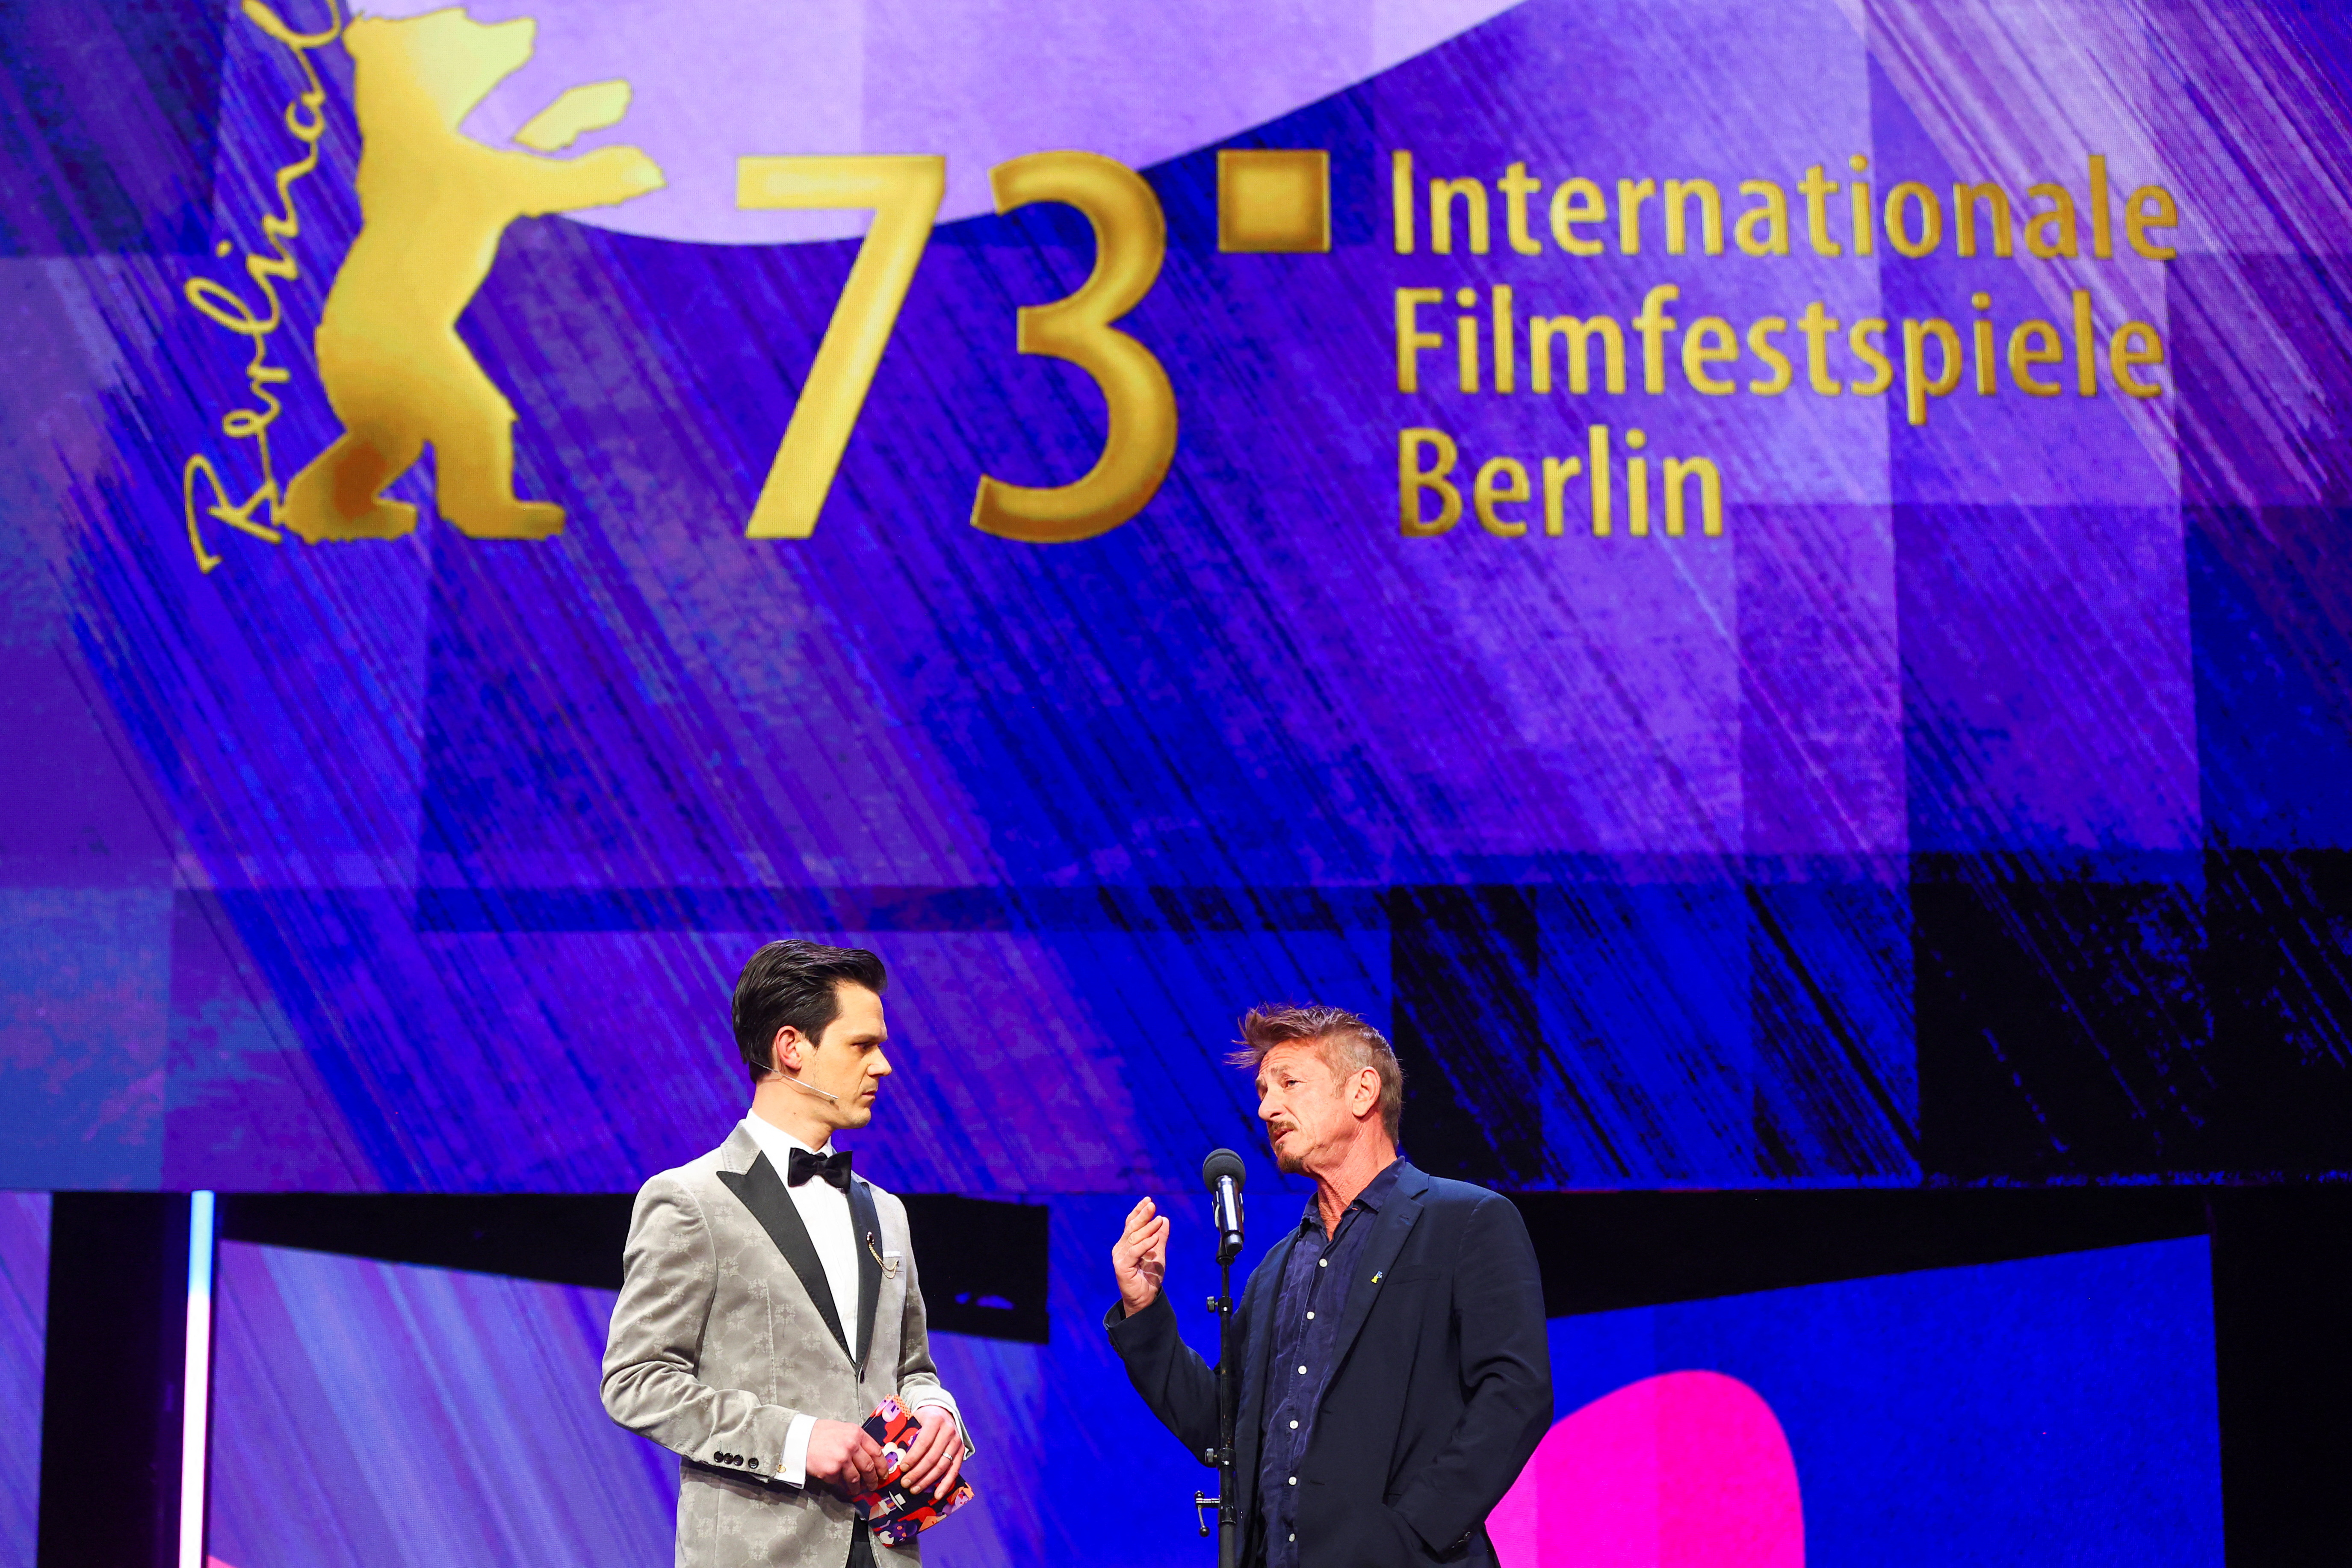 El presentador televisivo alemán Jo Schück y el actor Sean Penn, durante la ceremonia de apertura del Festival Internacional de Cine de Berlín, en sus 73° edición (Foto: REUTERS/Fabrizio Bensch)